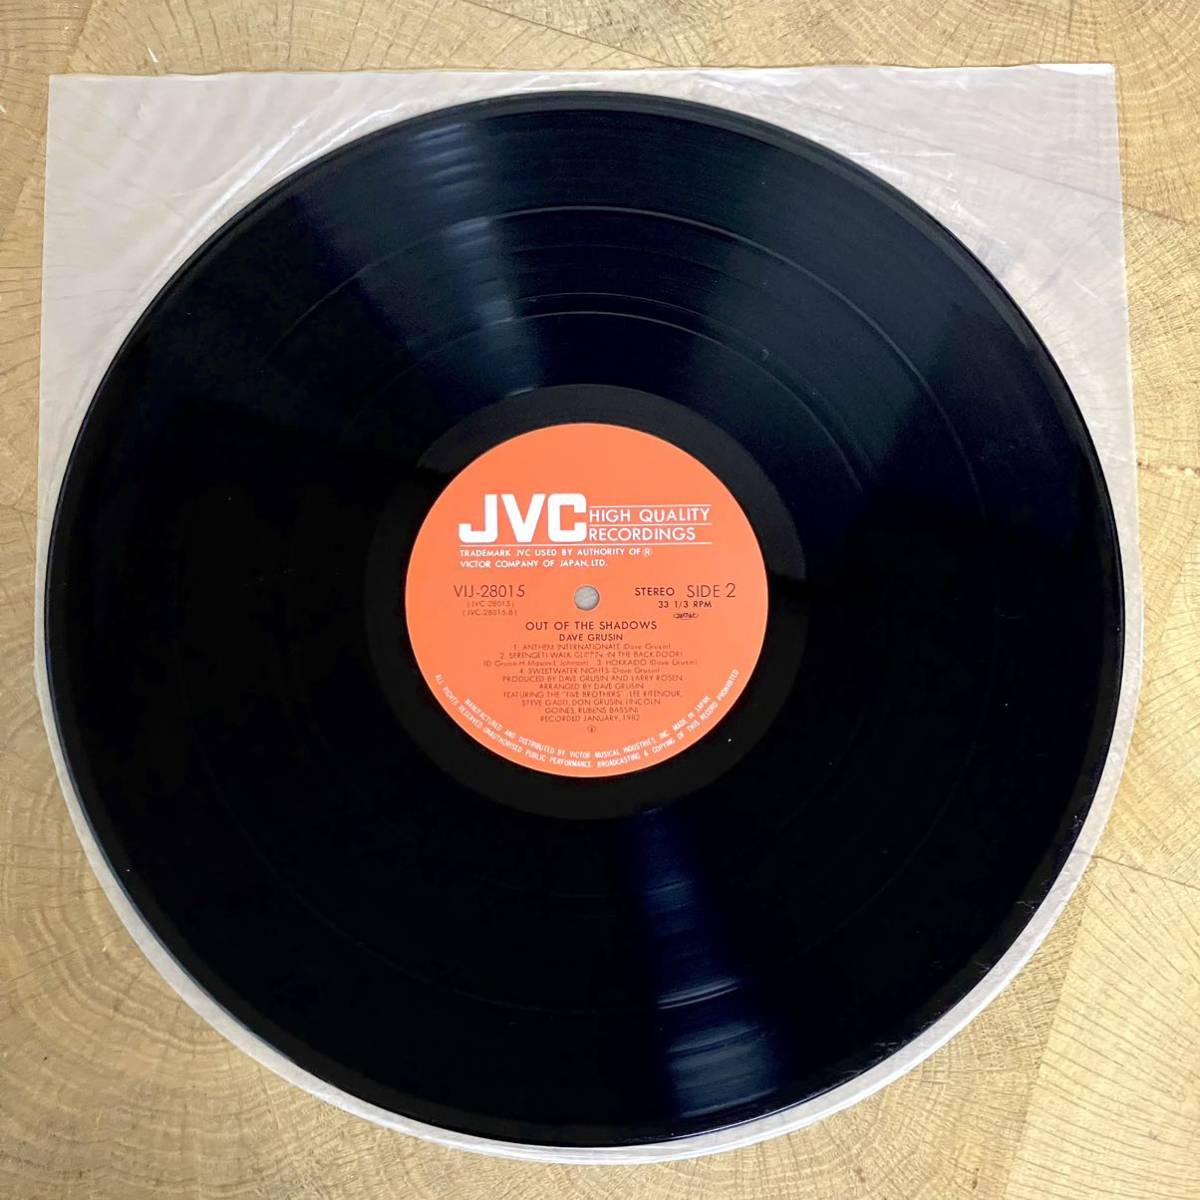 視聴確認済 レコード/LP JAZZ FUSION DAVE GRUSIN/デイブ・グルーシン OUT OF THE SHADOWS/アウト・オブ・ザ・シャドウズ VIJ-28015_画像6